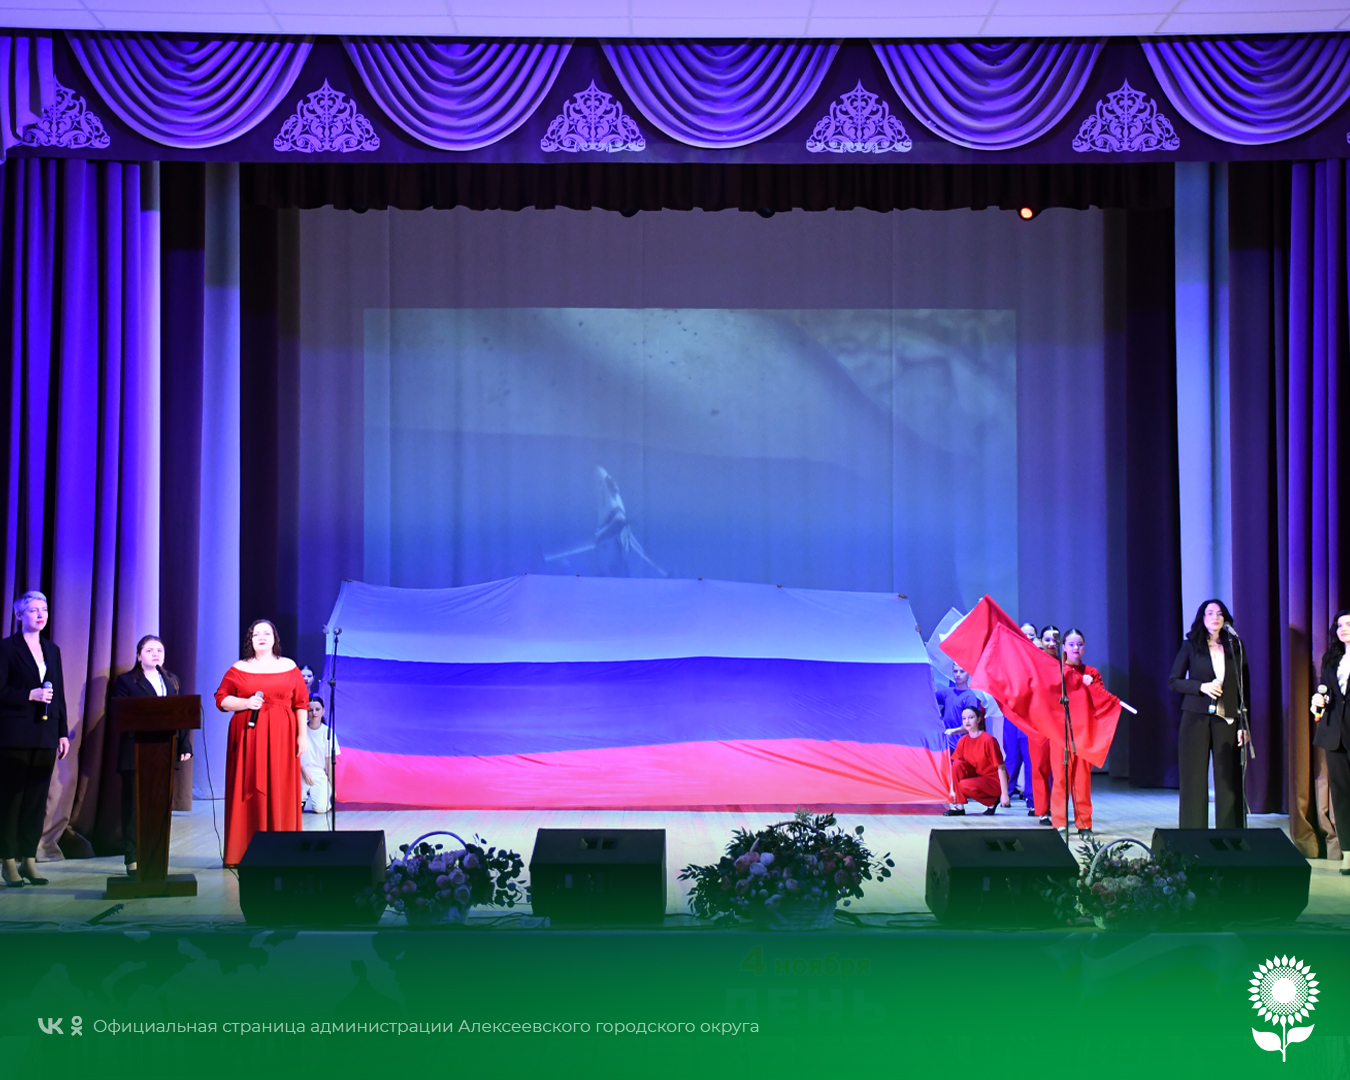 В Центре культурного развития «Солнечный» состоялся праздничный концерт «Россия – это мы!», посвященный Дню народного единства.